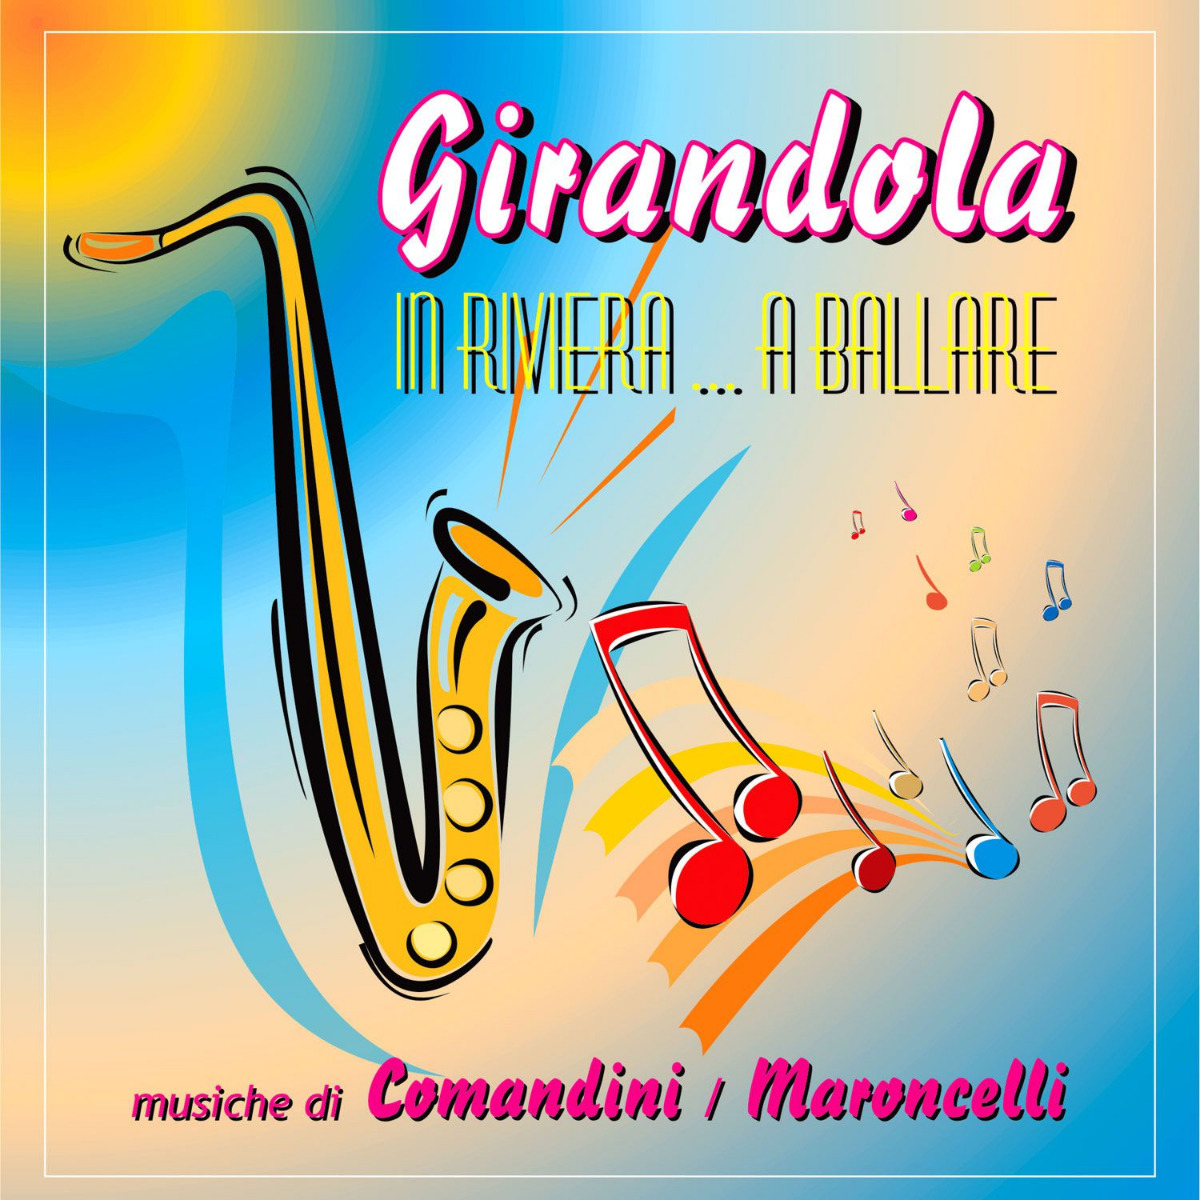 Comandini Maroncelli - Girandola in riviera a ballare